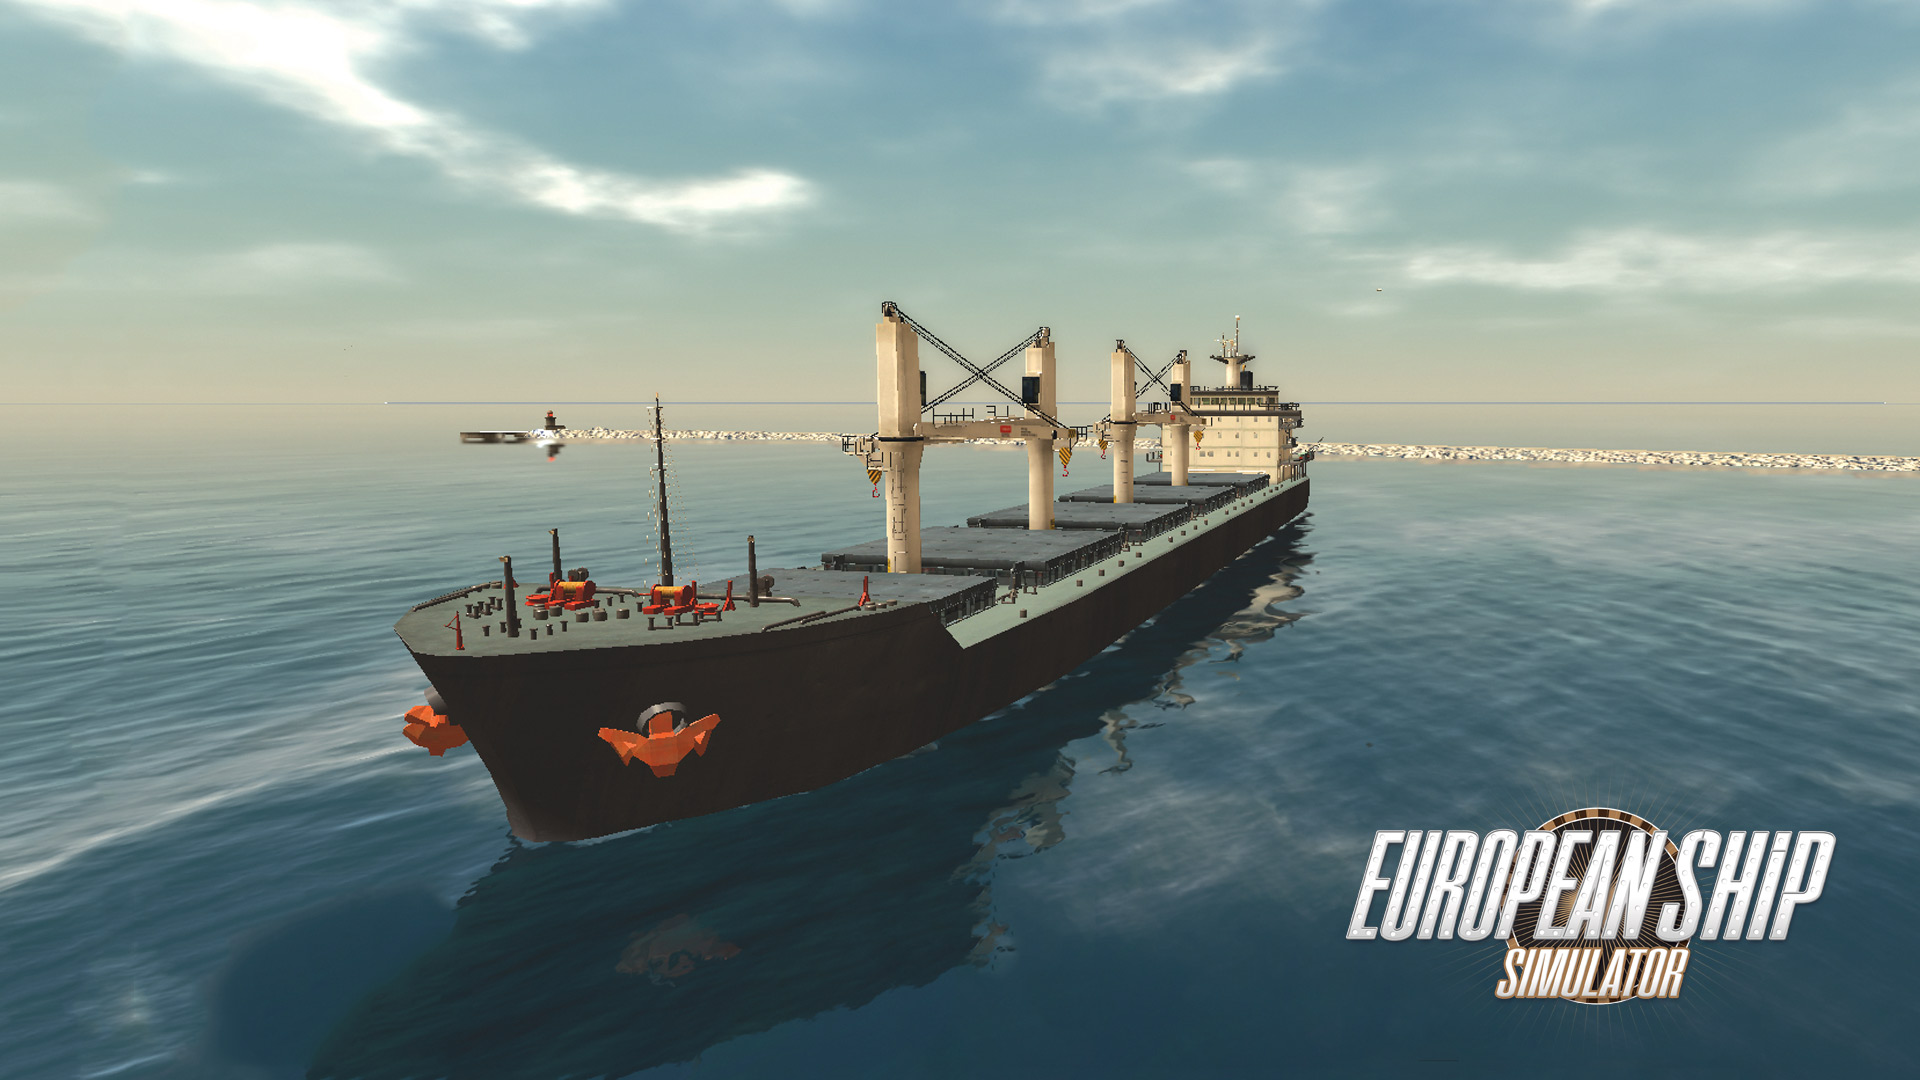 download european ship simulator